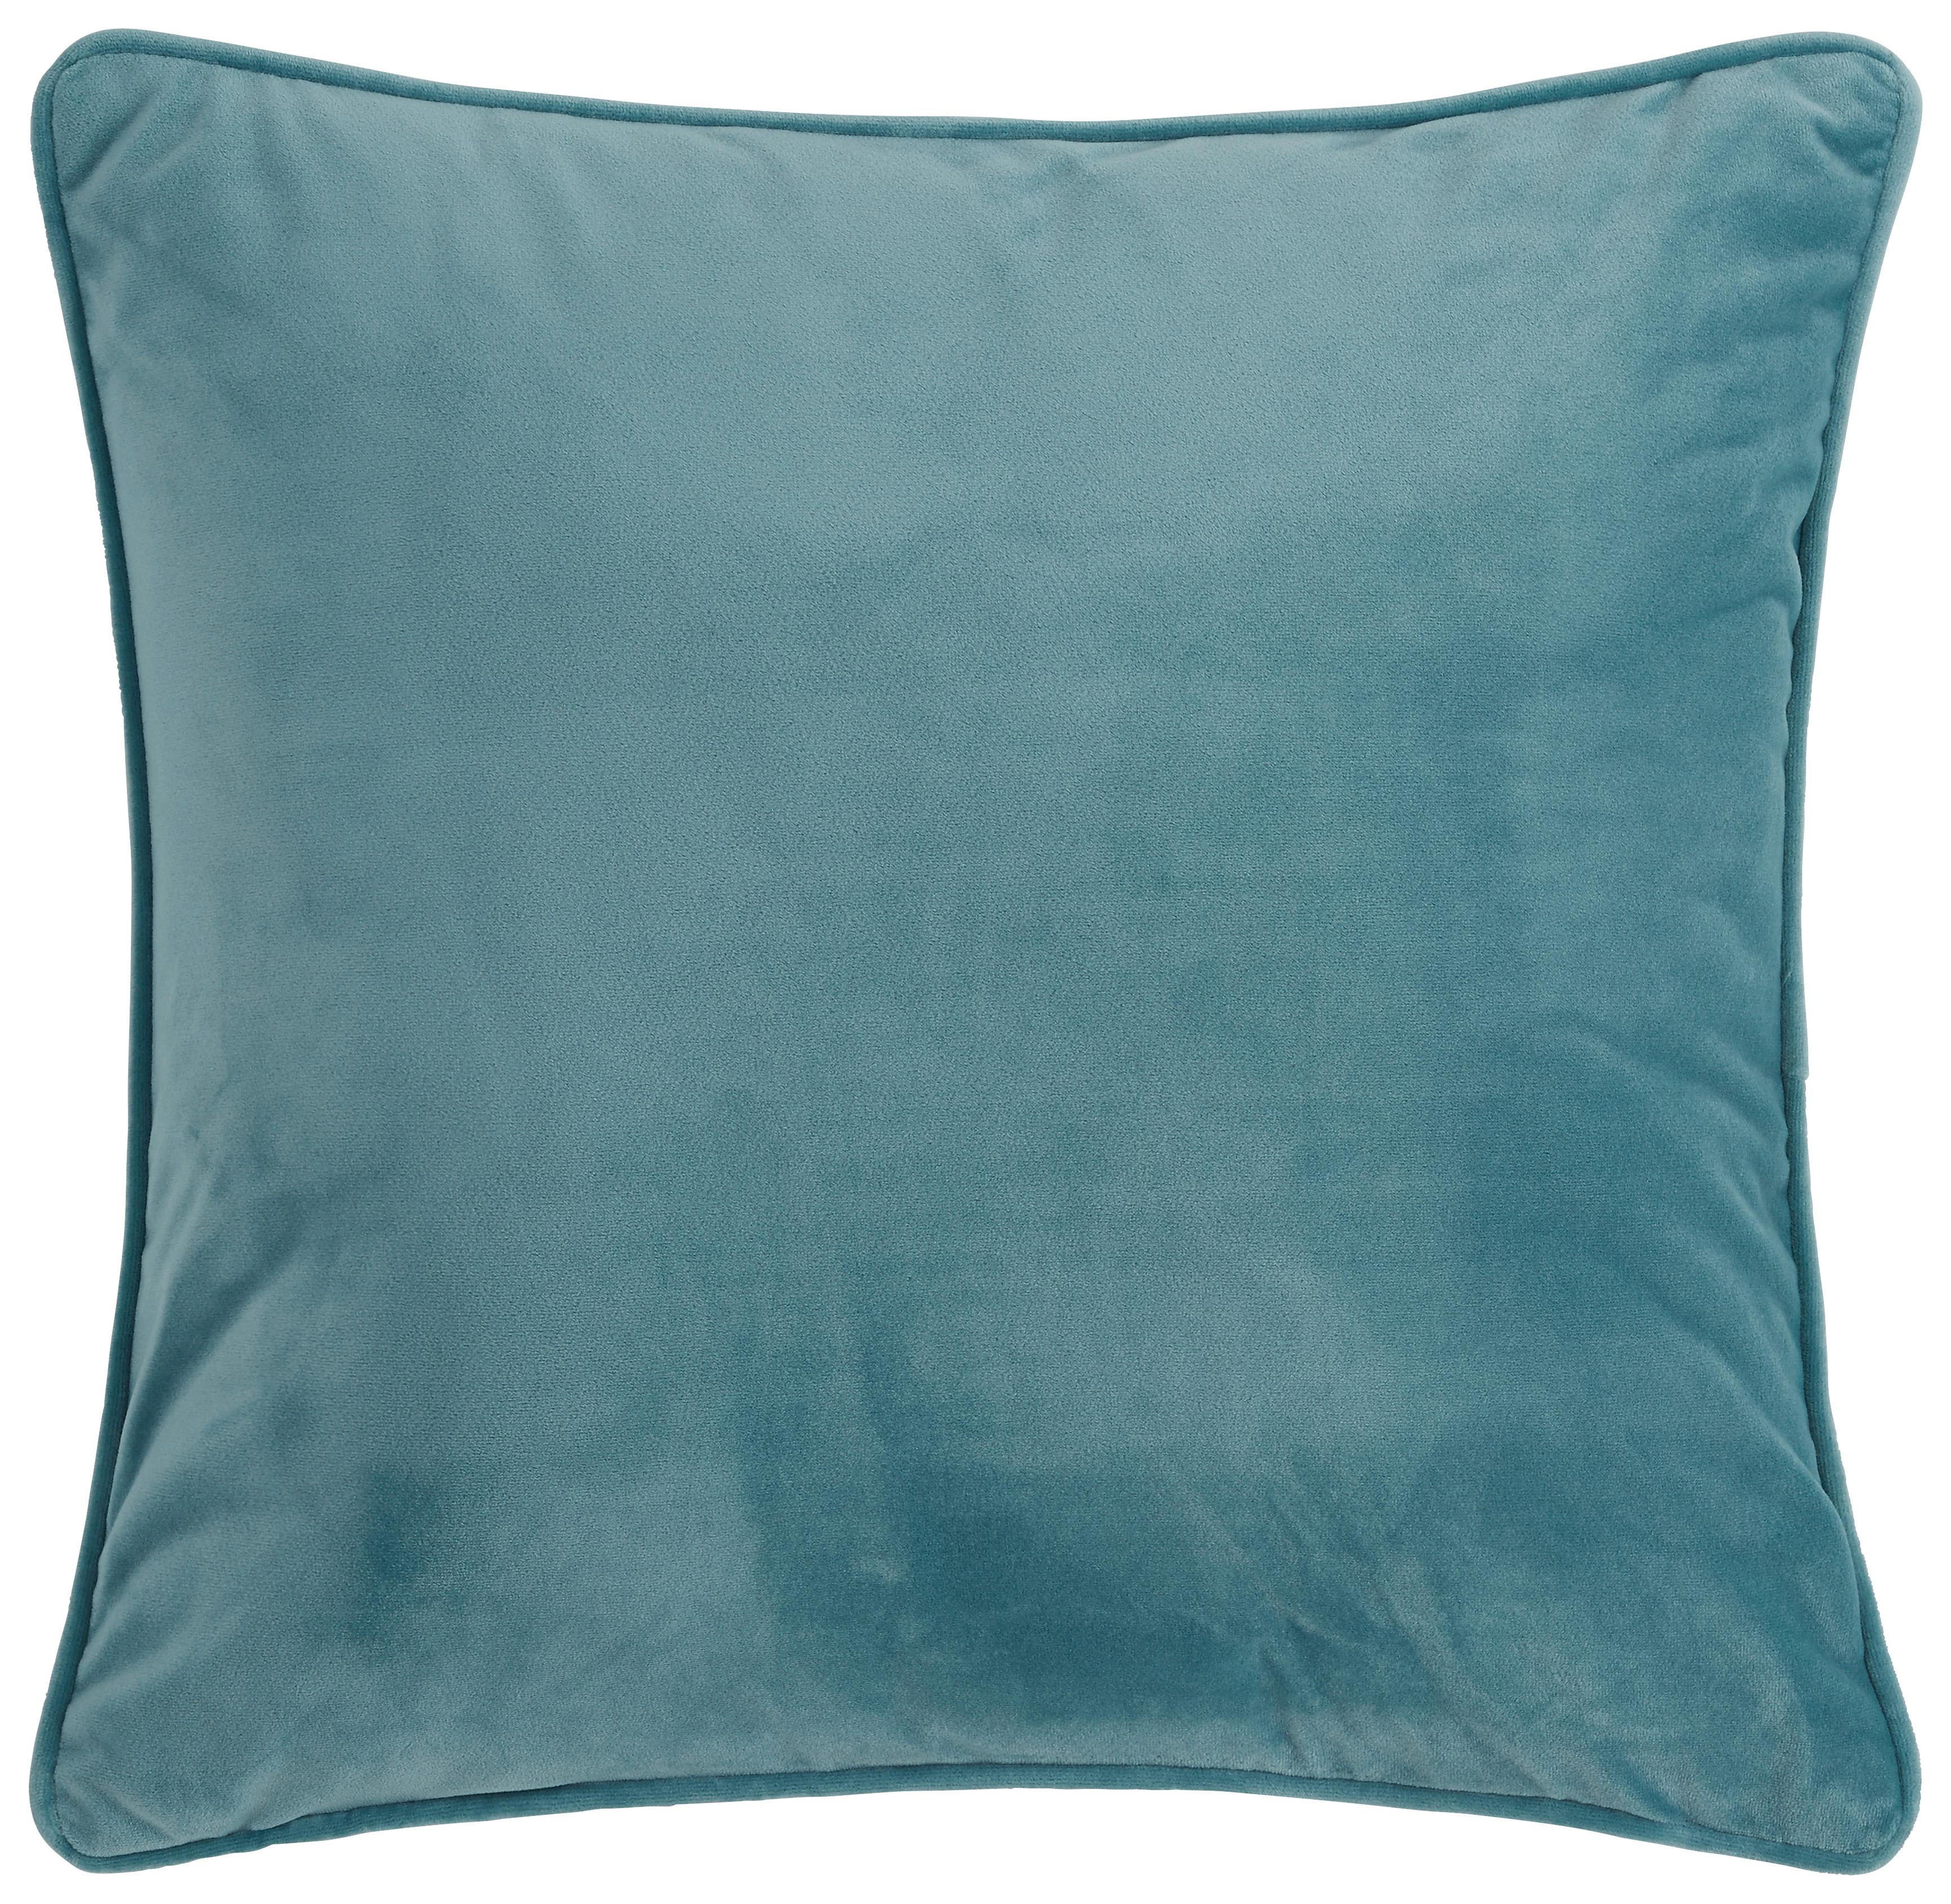 Zierkissen Viola in Blau ca. 45x45cm - Blau, Textil (45/45cm) - Premium Living